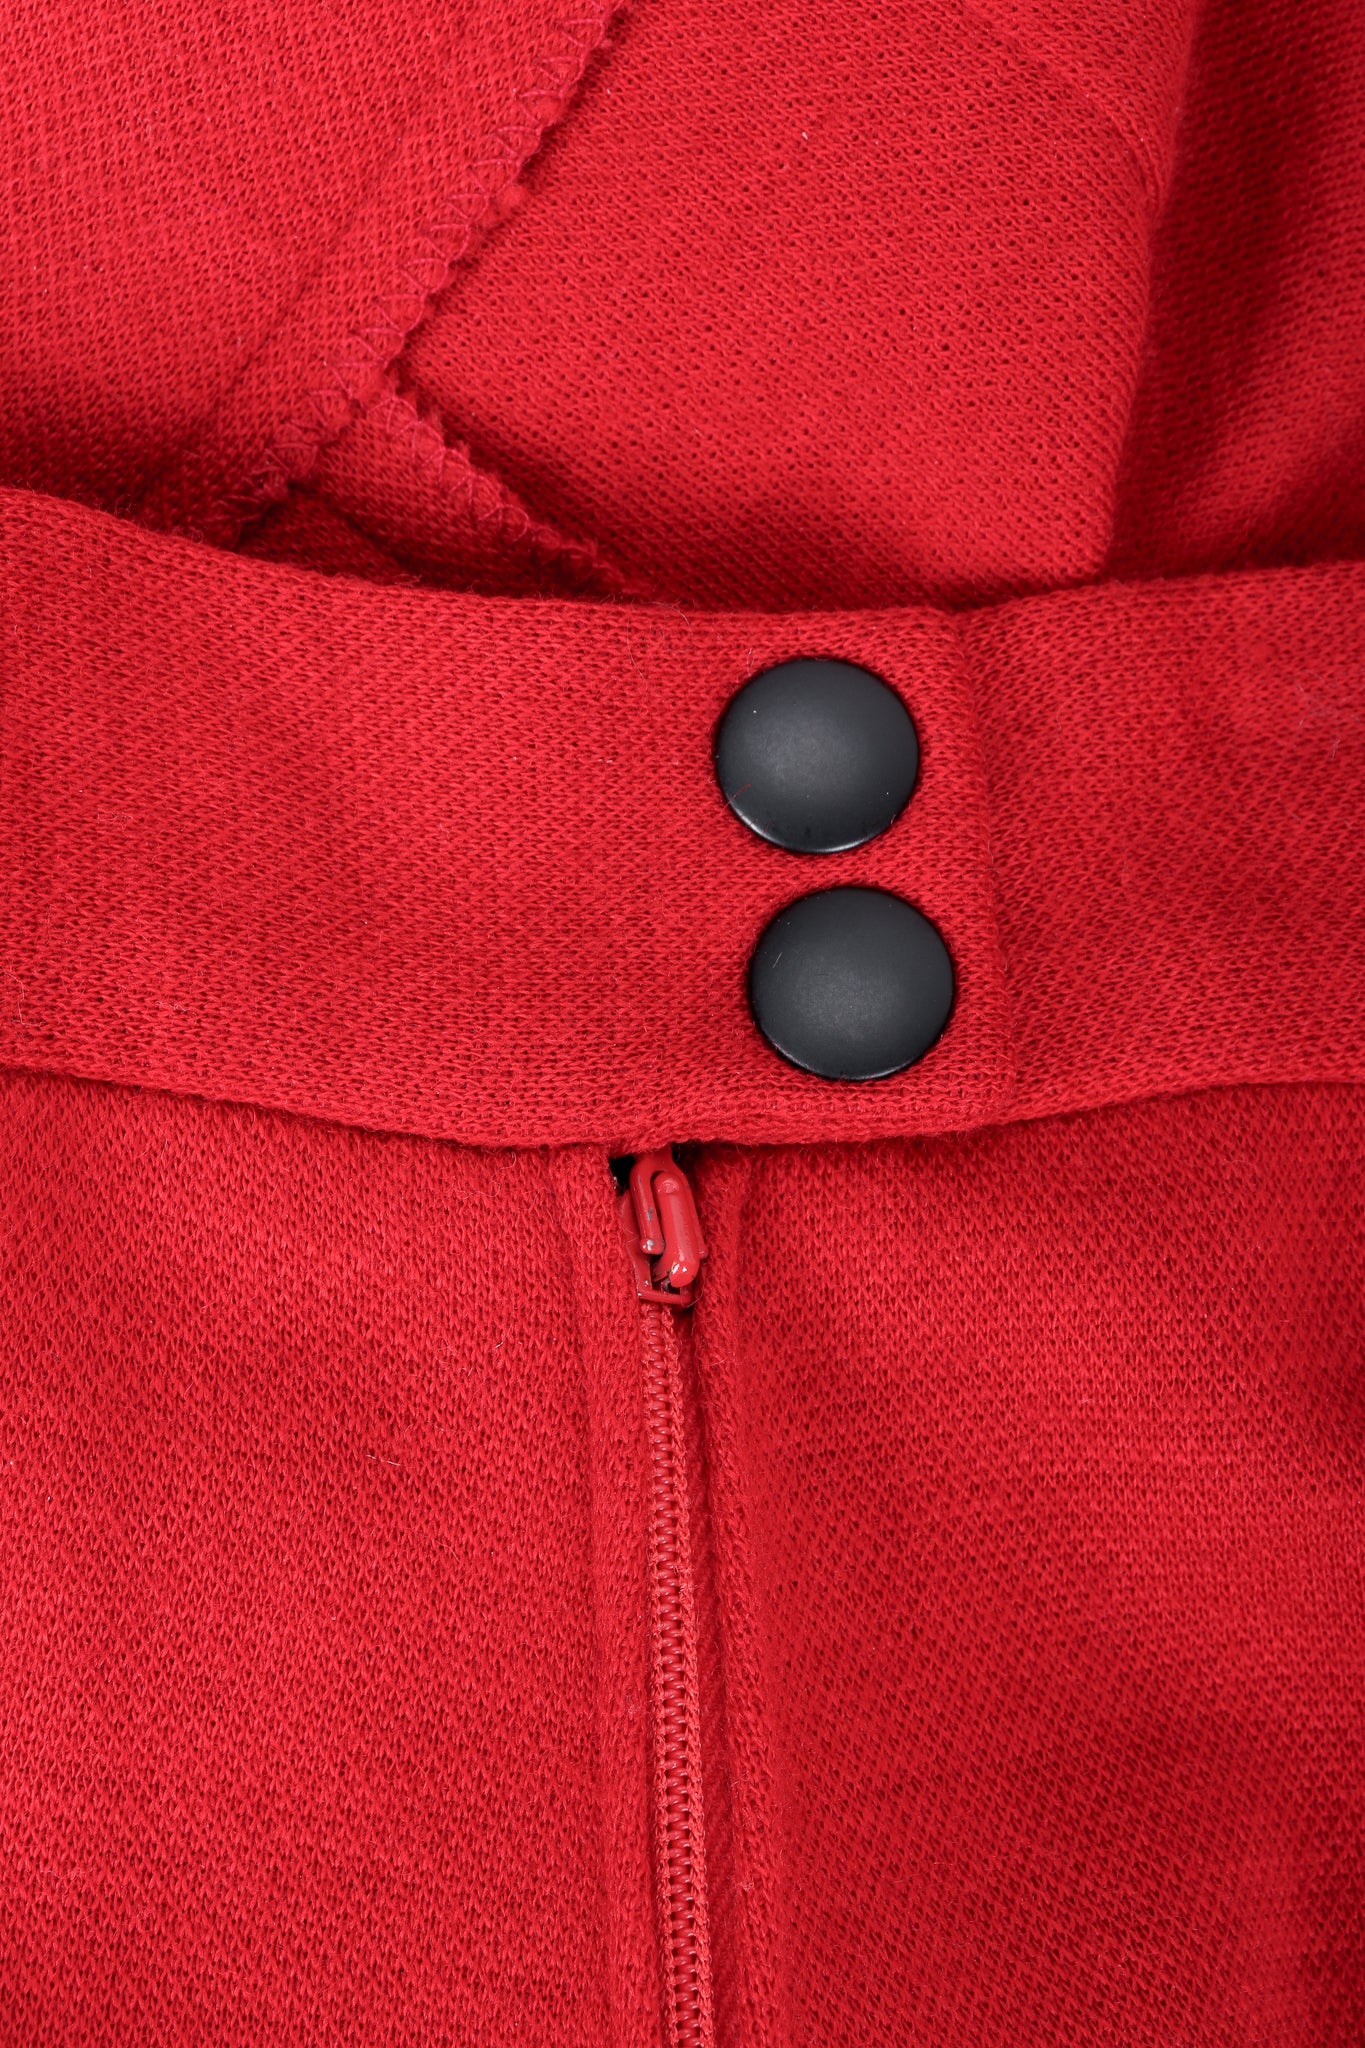 Vintage Sonia Rykiel Red Knit Pant Set Waistband Detail at Recess